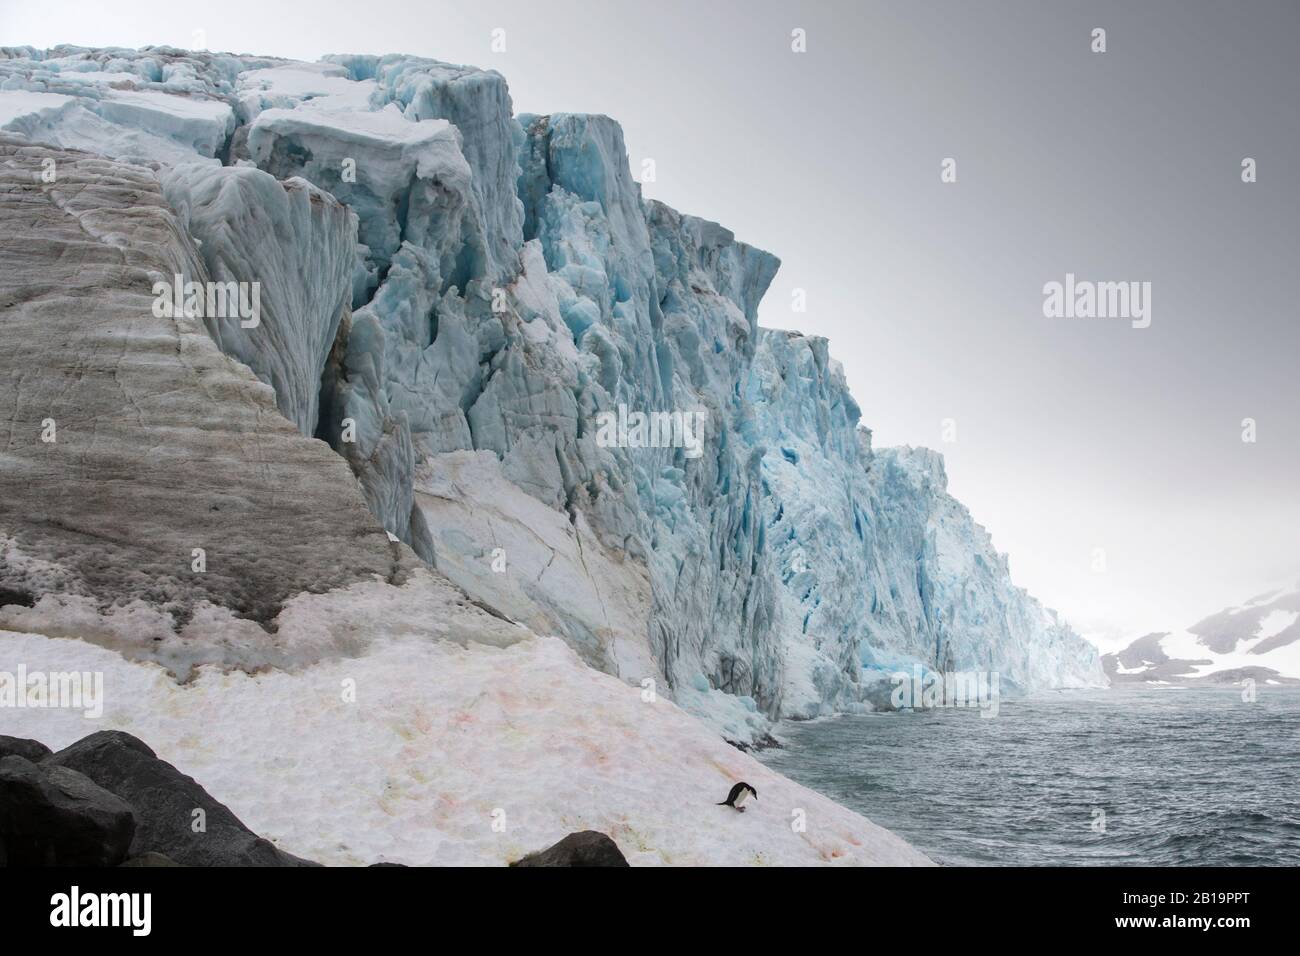 Un pingouin de Chinstrap Pygoscelis antarcticus s'est assis sur un glacier à fort point, sur l'île de Greenwich, dans les îles Shetland du Sud, en Antarctique. Banque D'Images